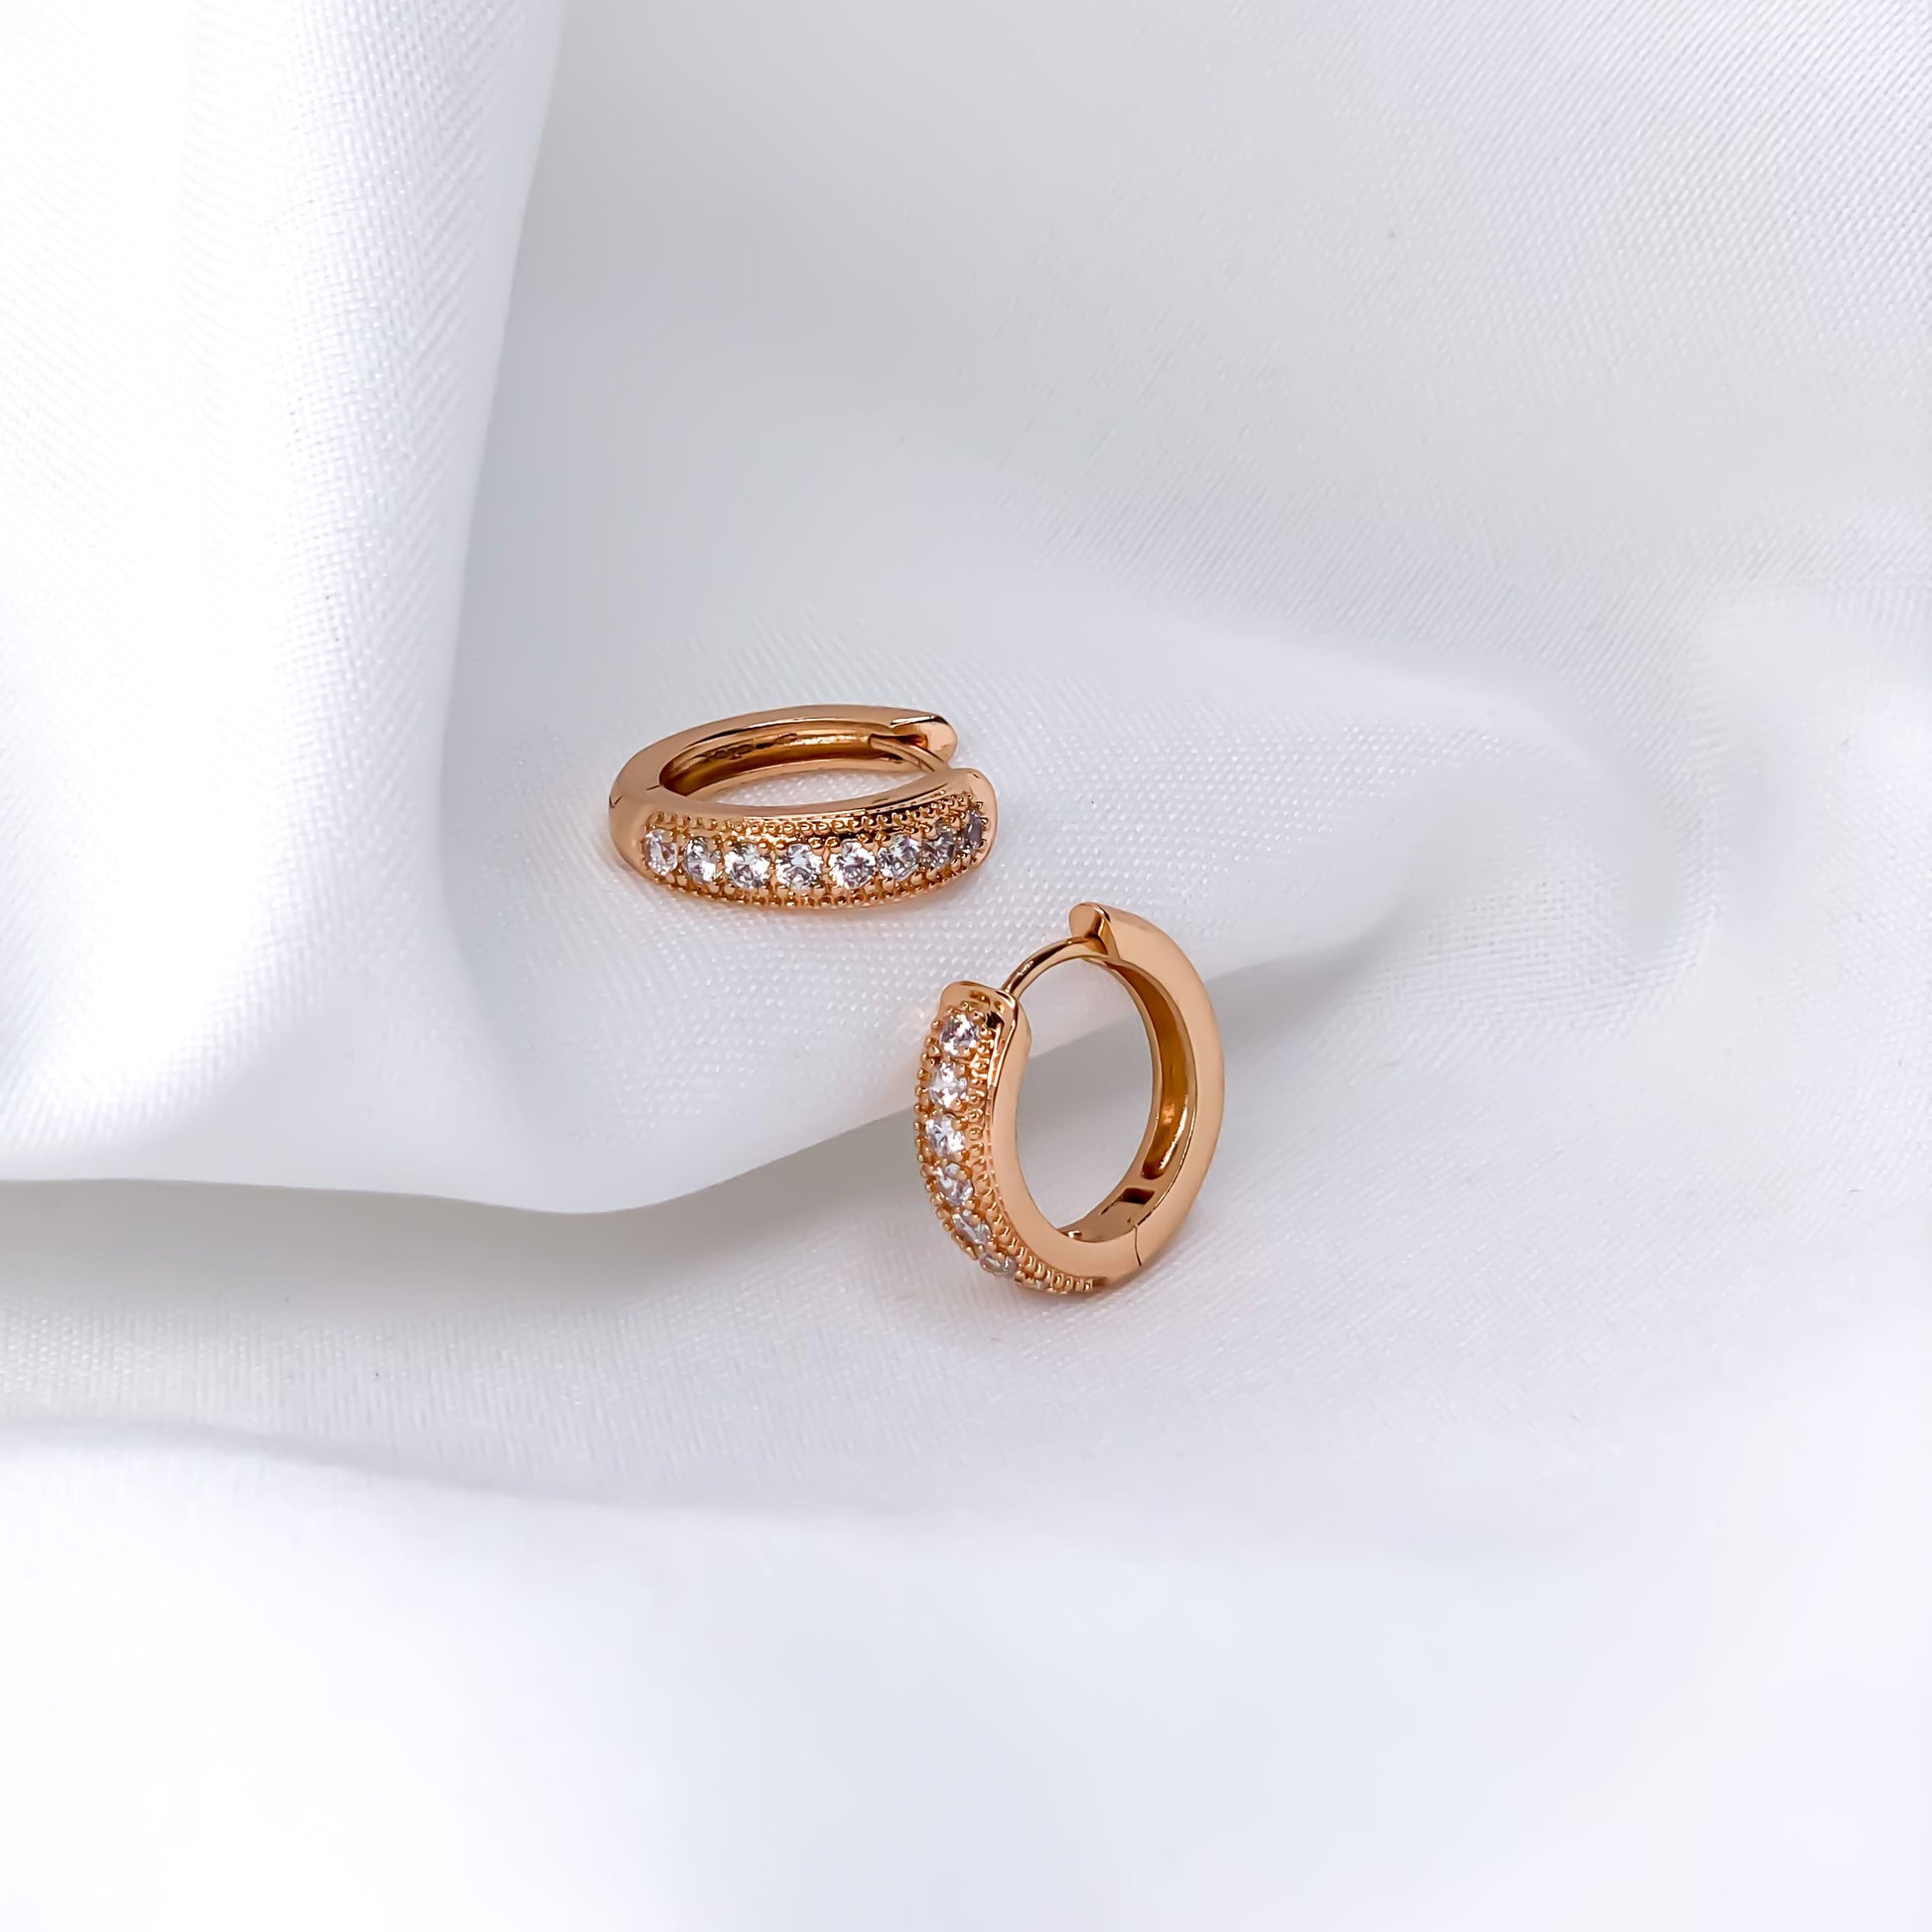 Hellen.V - Gold Cubic Zirconia Earrings | Hoop Earrings 